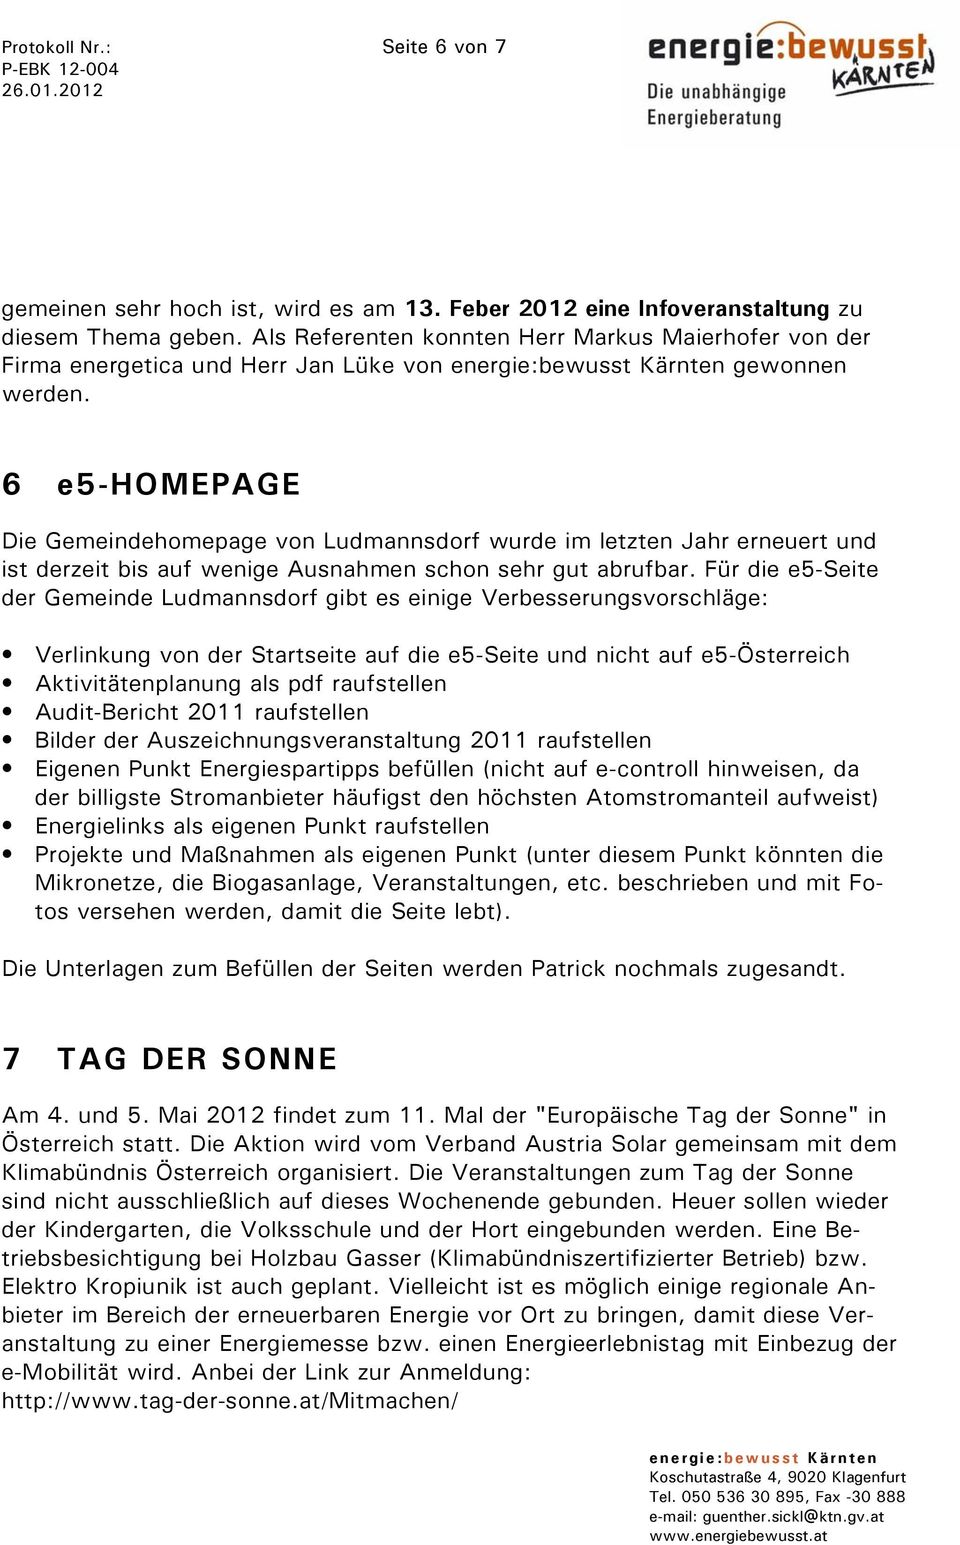 6 e5-homepage Die Gemeindehomepage von Ludmannsdorf wurde im letzten Jahr erneuert und ist derzeit bis auf wenige Ausnahmen schon sehr gut abrufbar.